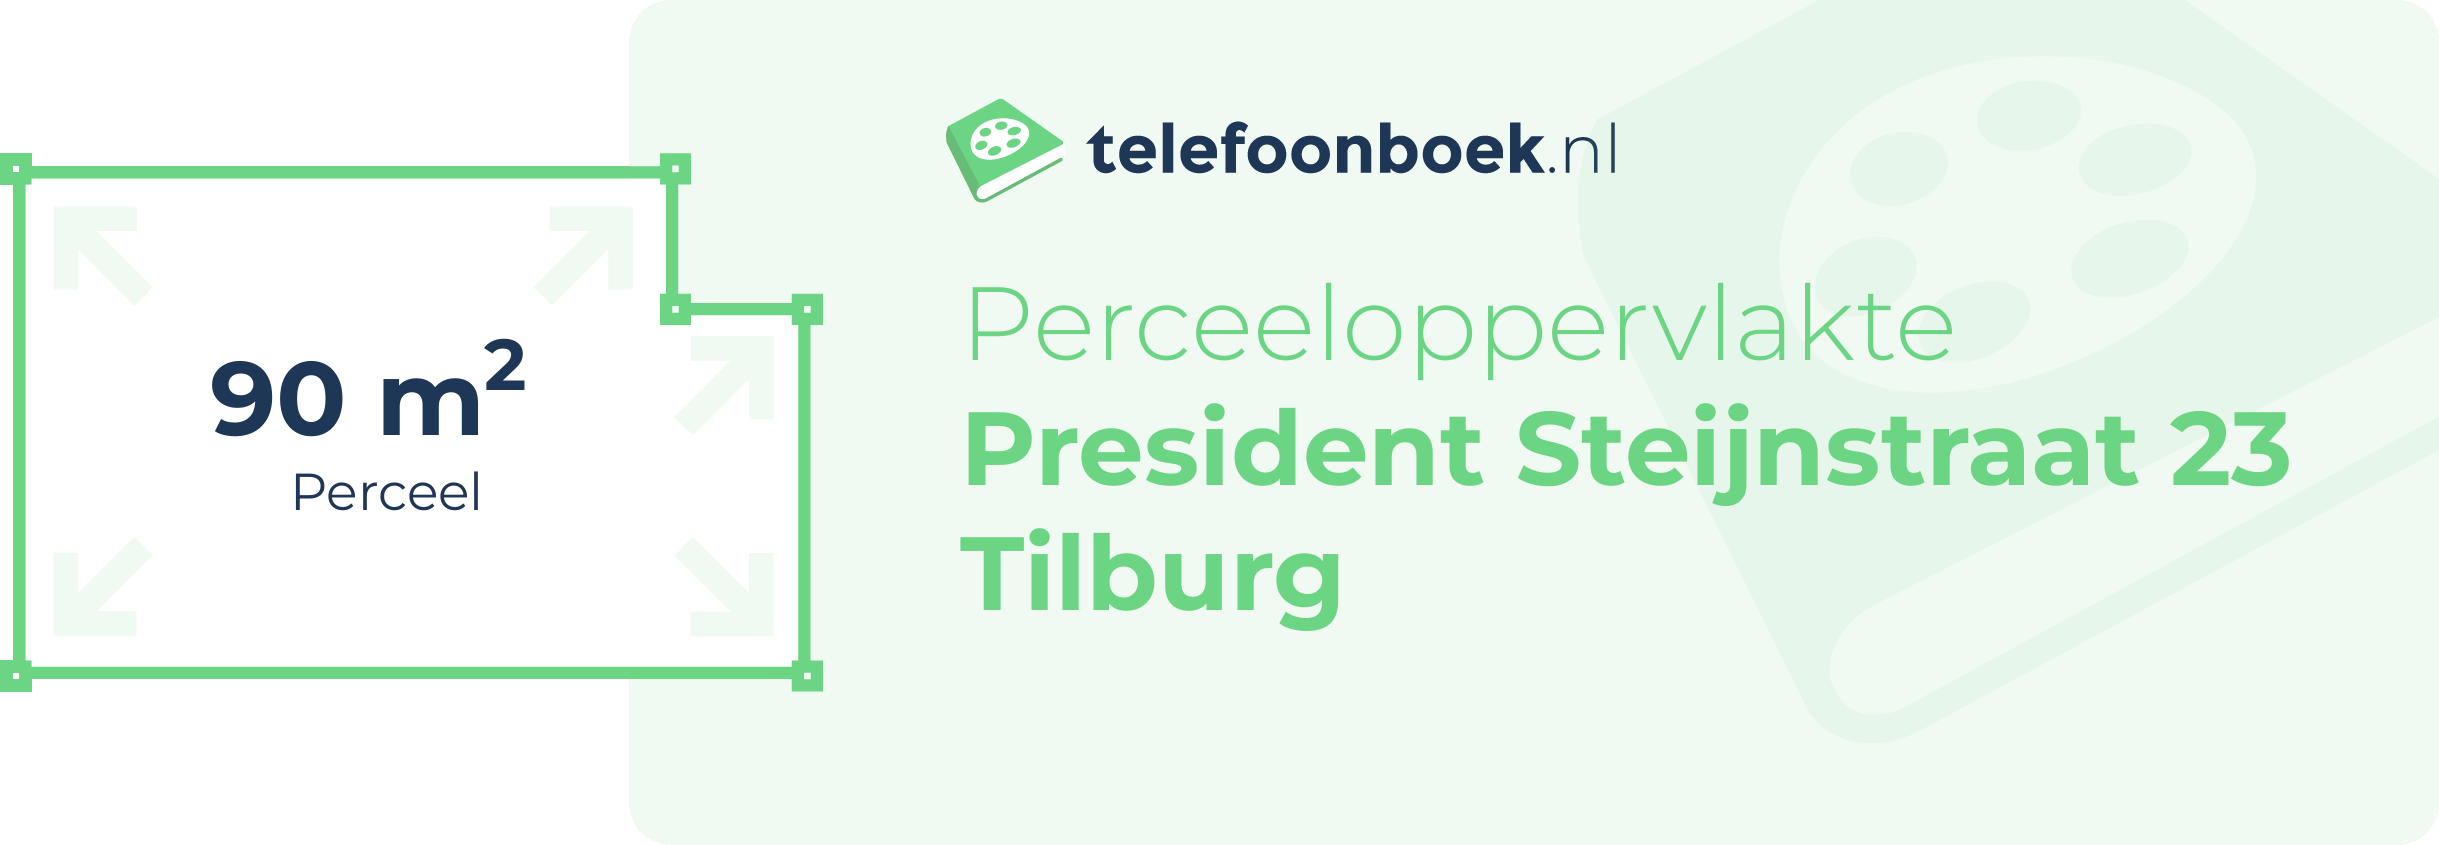 Perceeloppervlakte President Steijnstraat 23 Tilburg